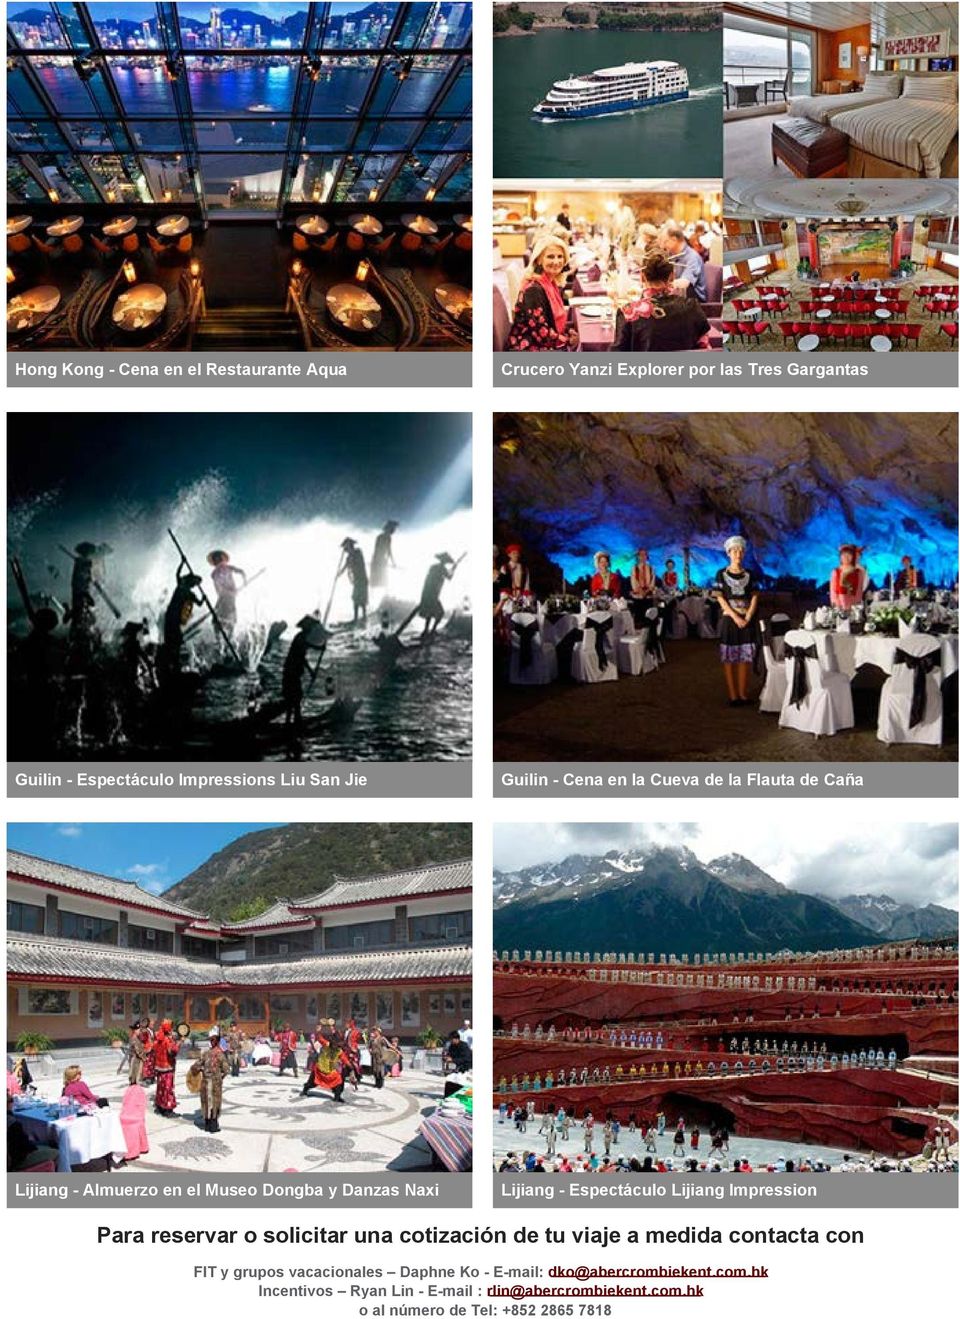 Lijiang Impression Para reservar o solicitar una cotización de tu viaje a medida contacta con FIT y grupos vacacionales Daphne